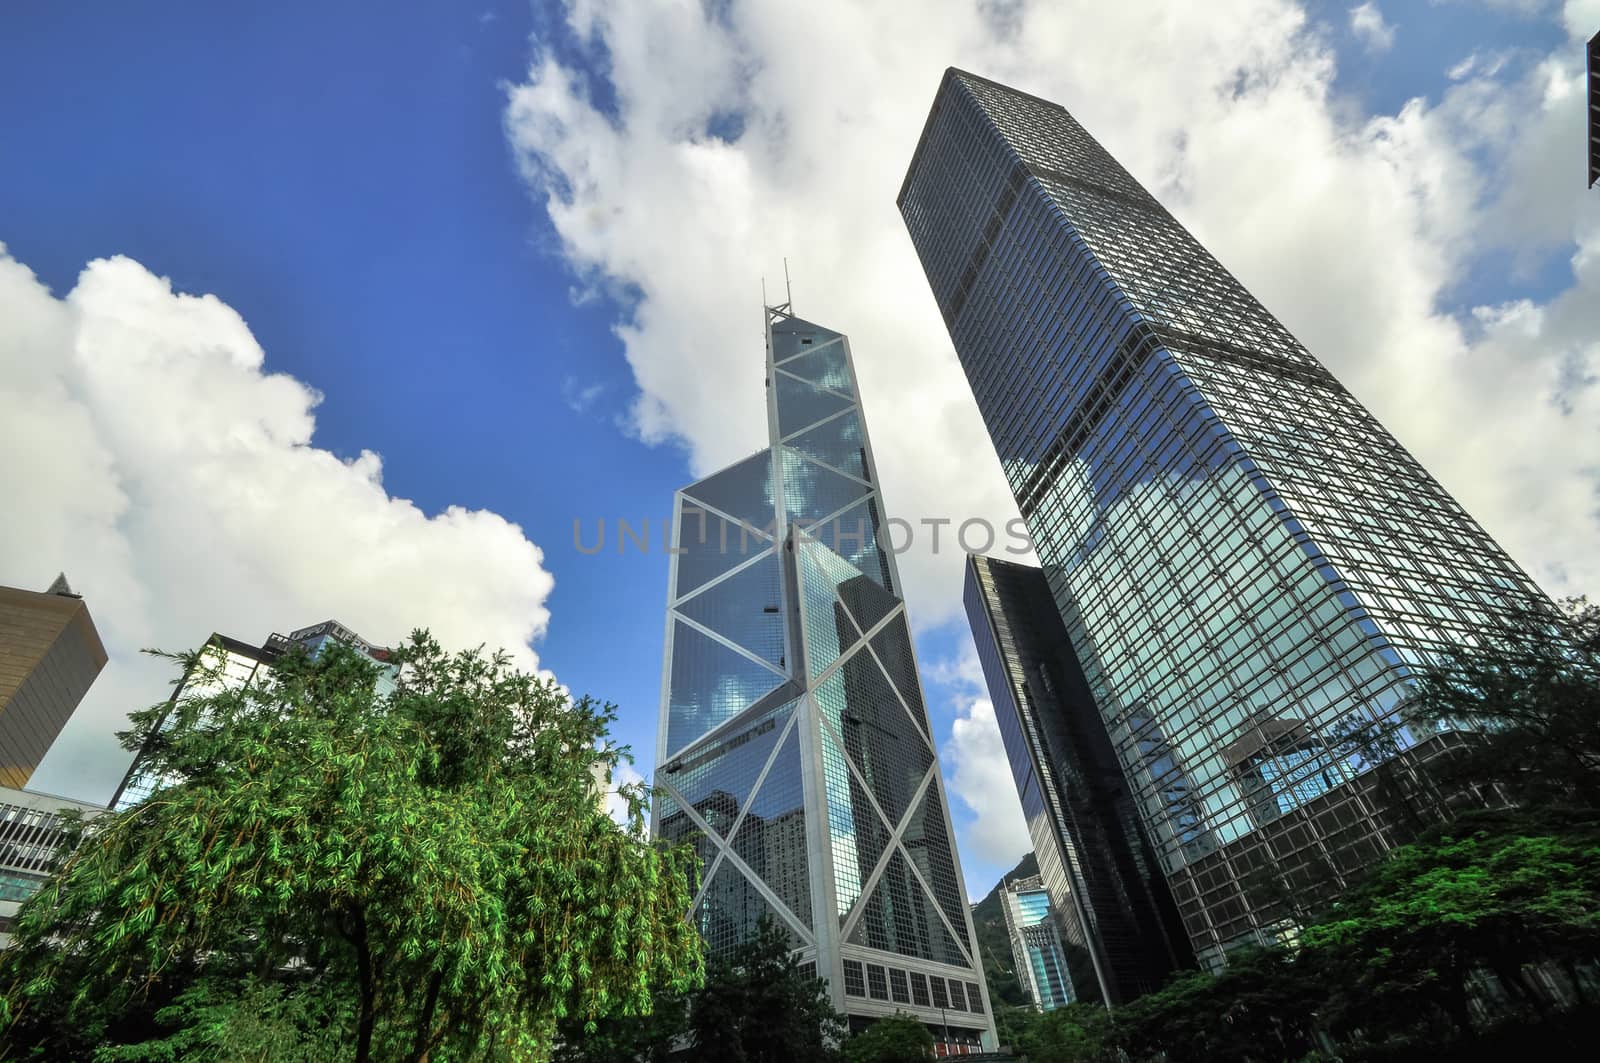 Hong Kong Bank Skysraper with blue sky, China